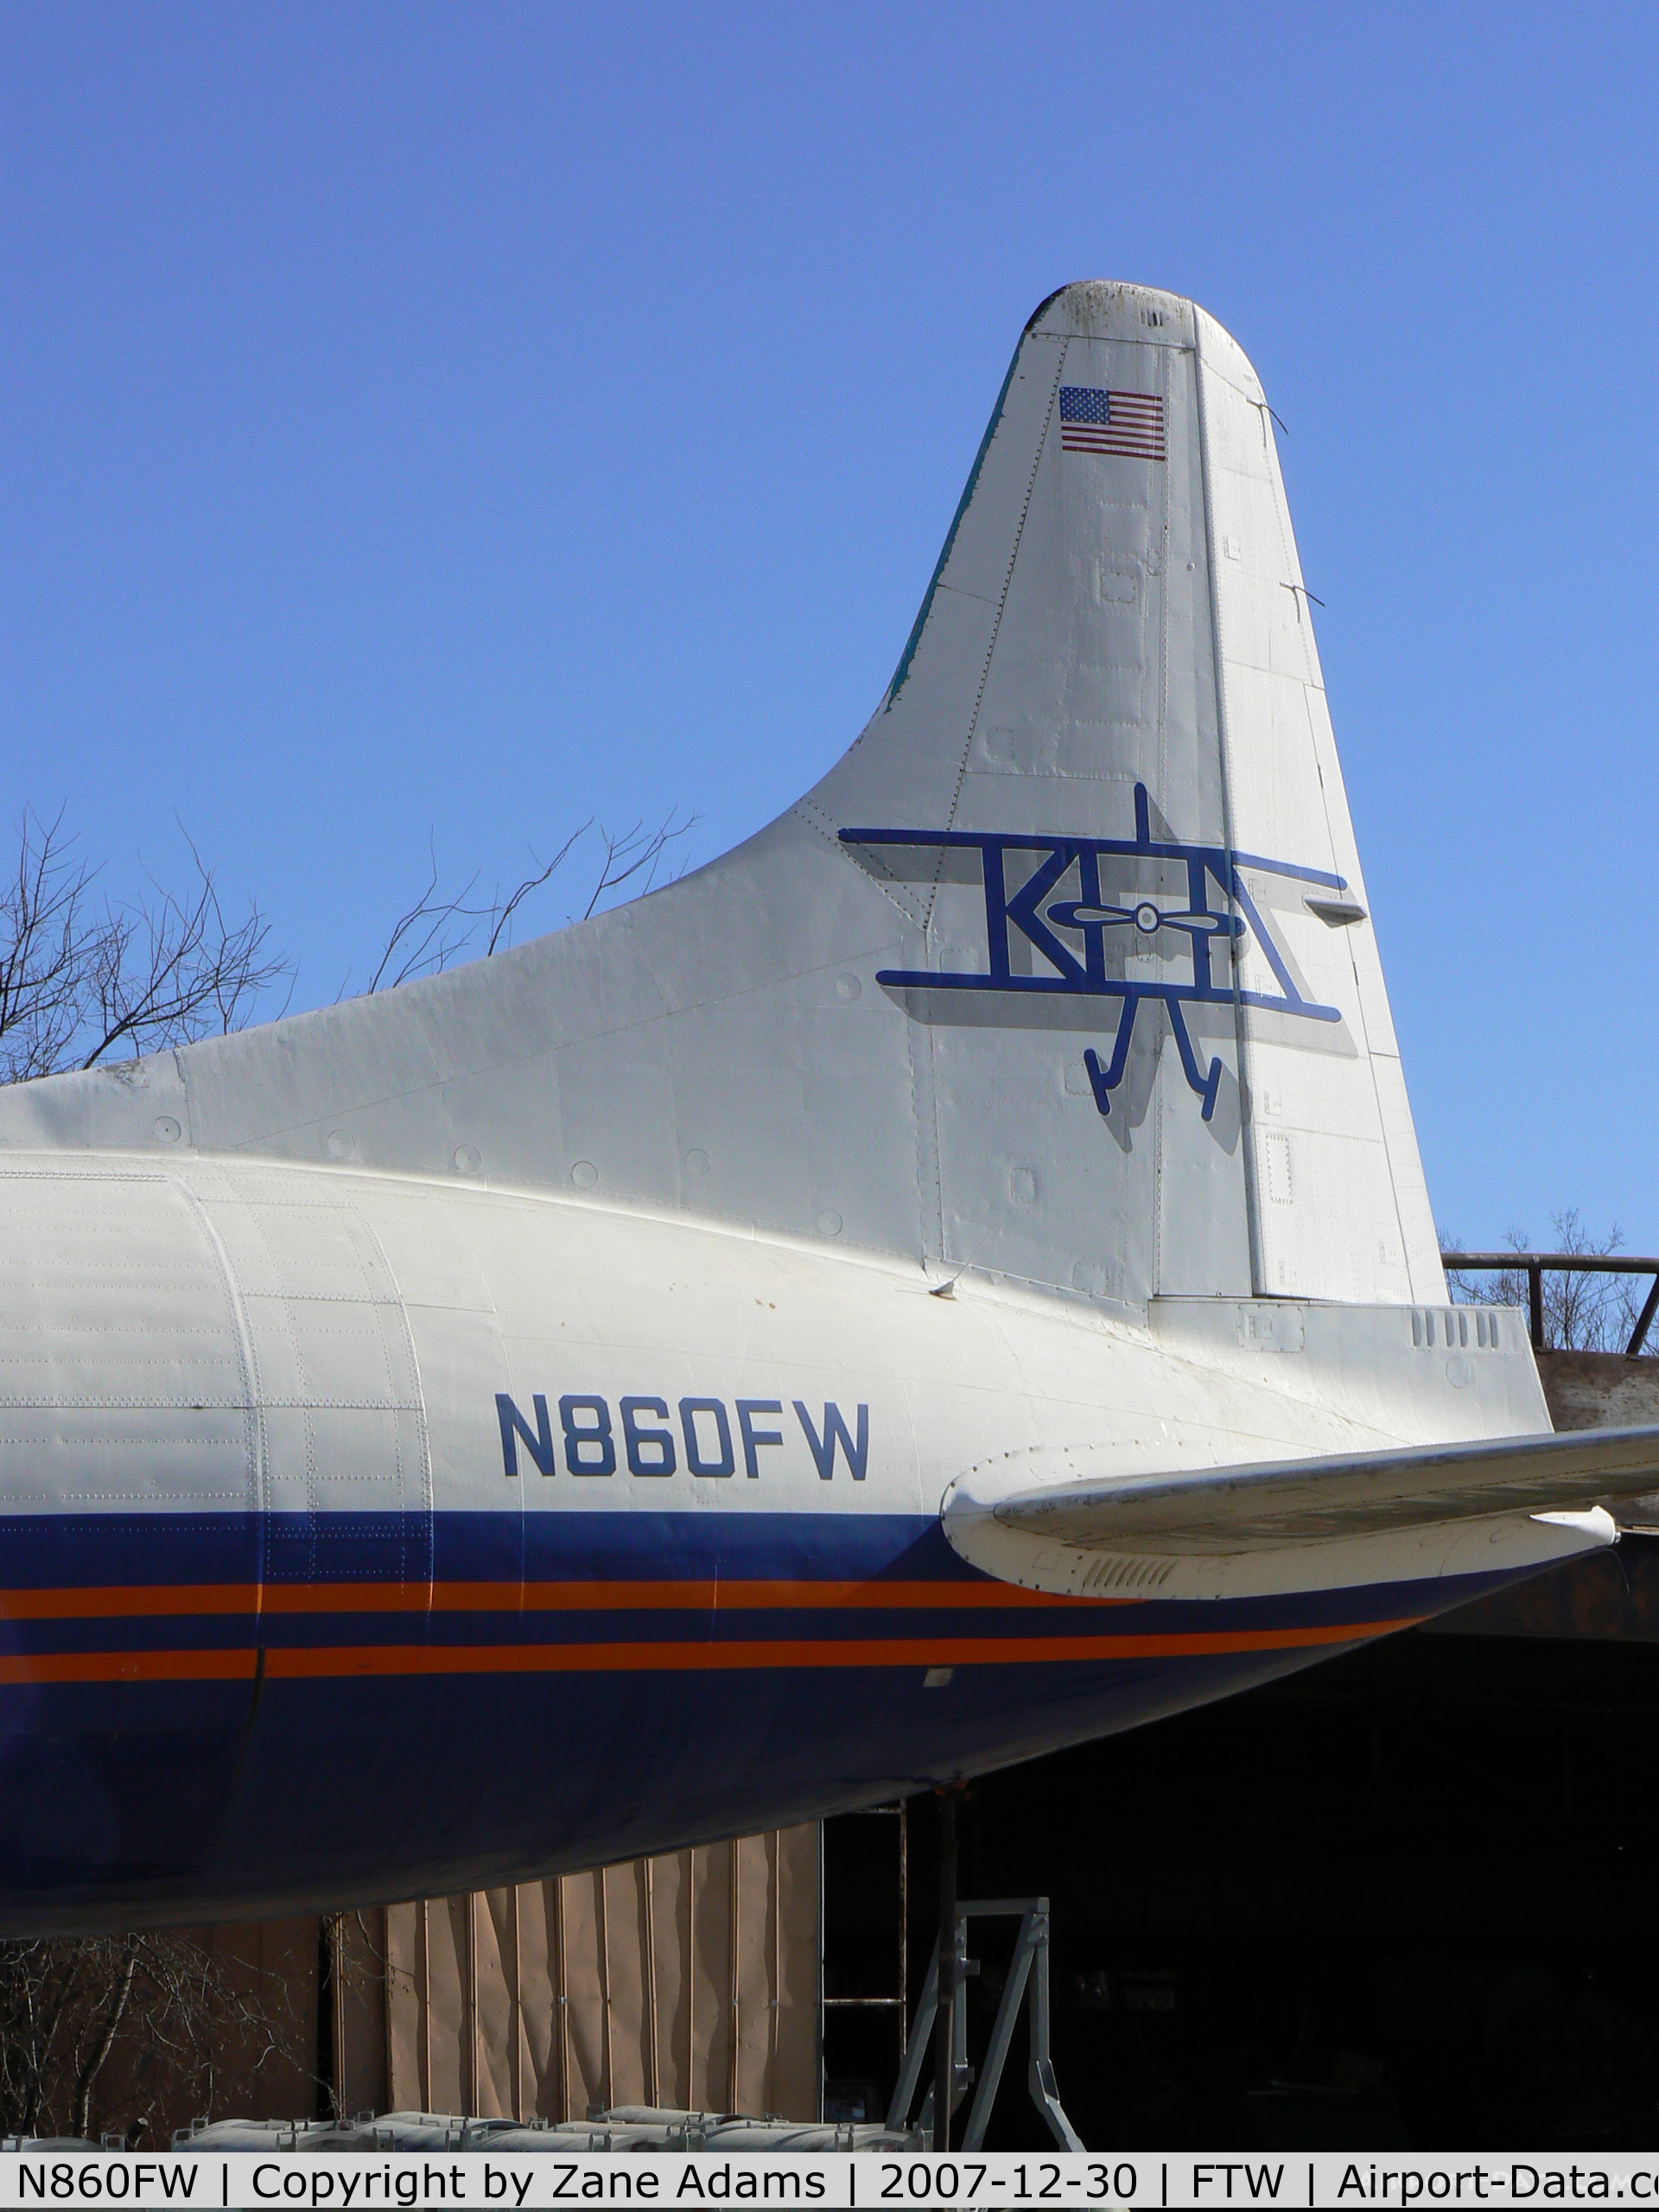 N860FW, Convair 640-340D C/N 10, Former Pacific Western (CF-PWU), Worldways (C-FPWU), Wright Airways (N2569D), Viking Int'l, Kitty Hawk (N860FW) at The Vintage Flying Museum